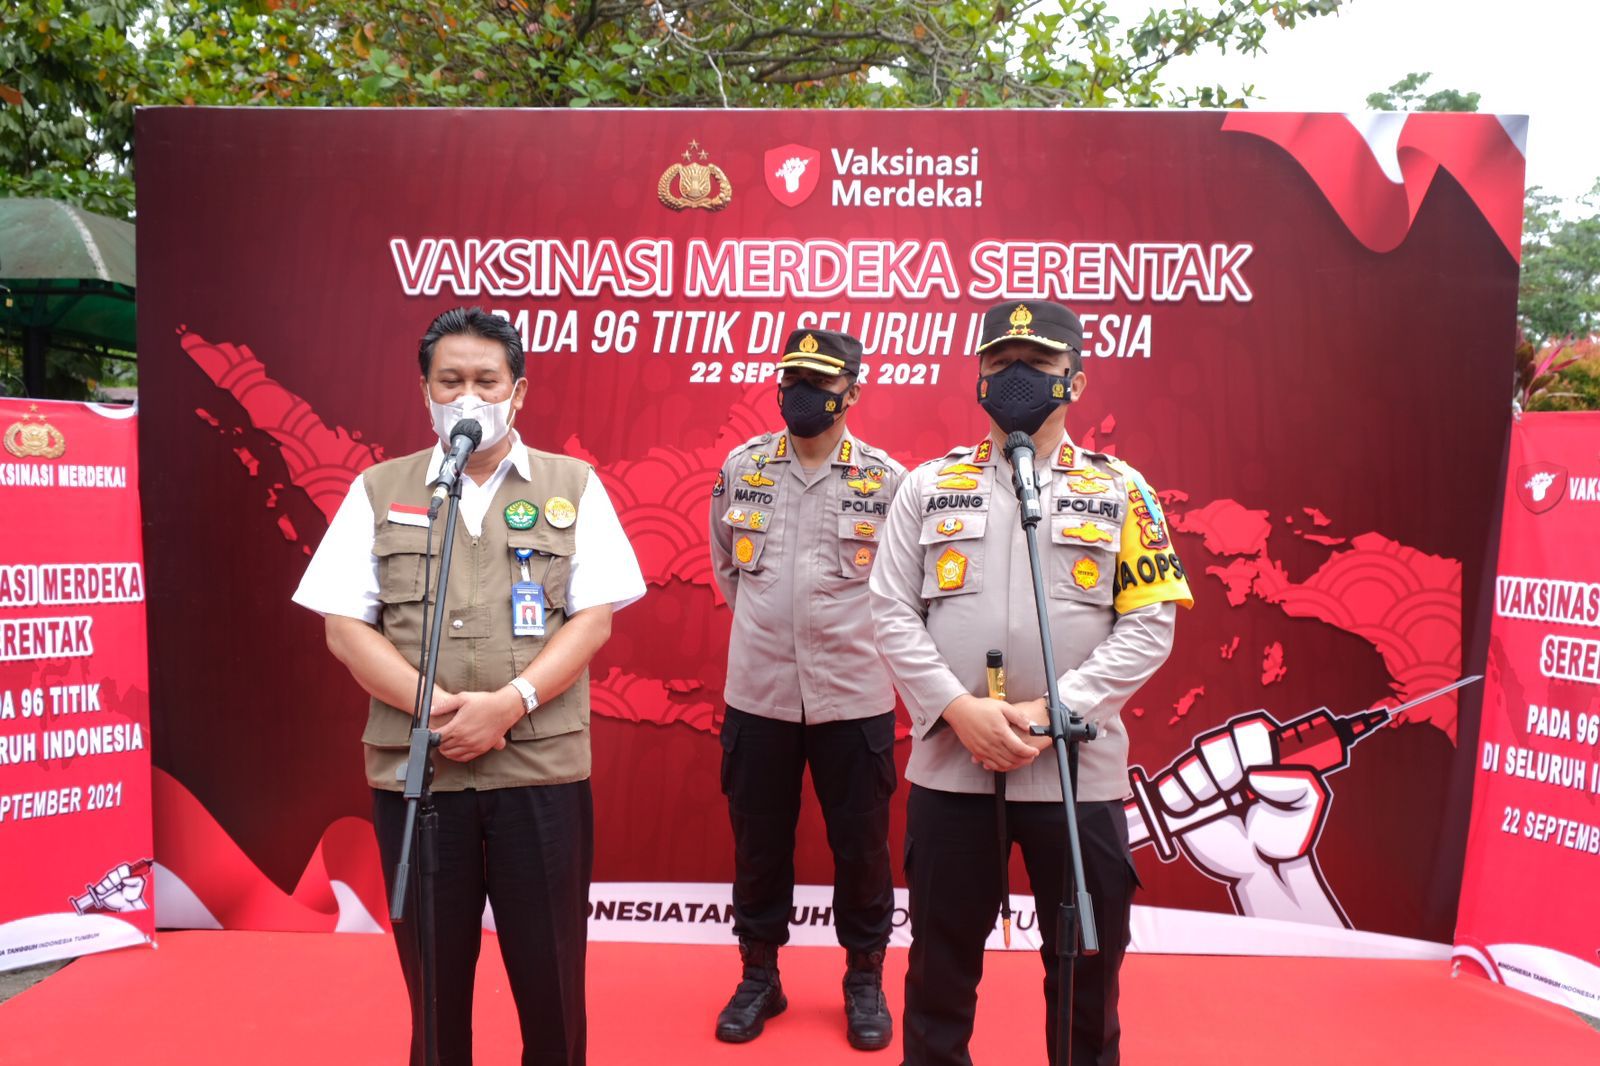 Vaksinasi Merdeka Serentak, Polda Riau Gandeng Kampus Siapkan 9000  Vaksin & 1500 Paket Bansos